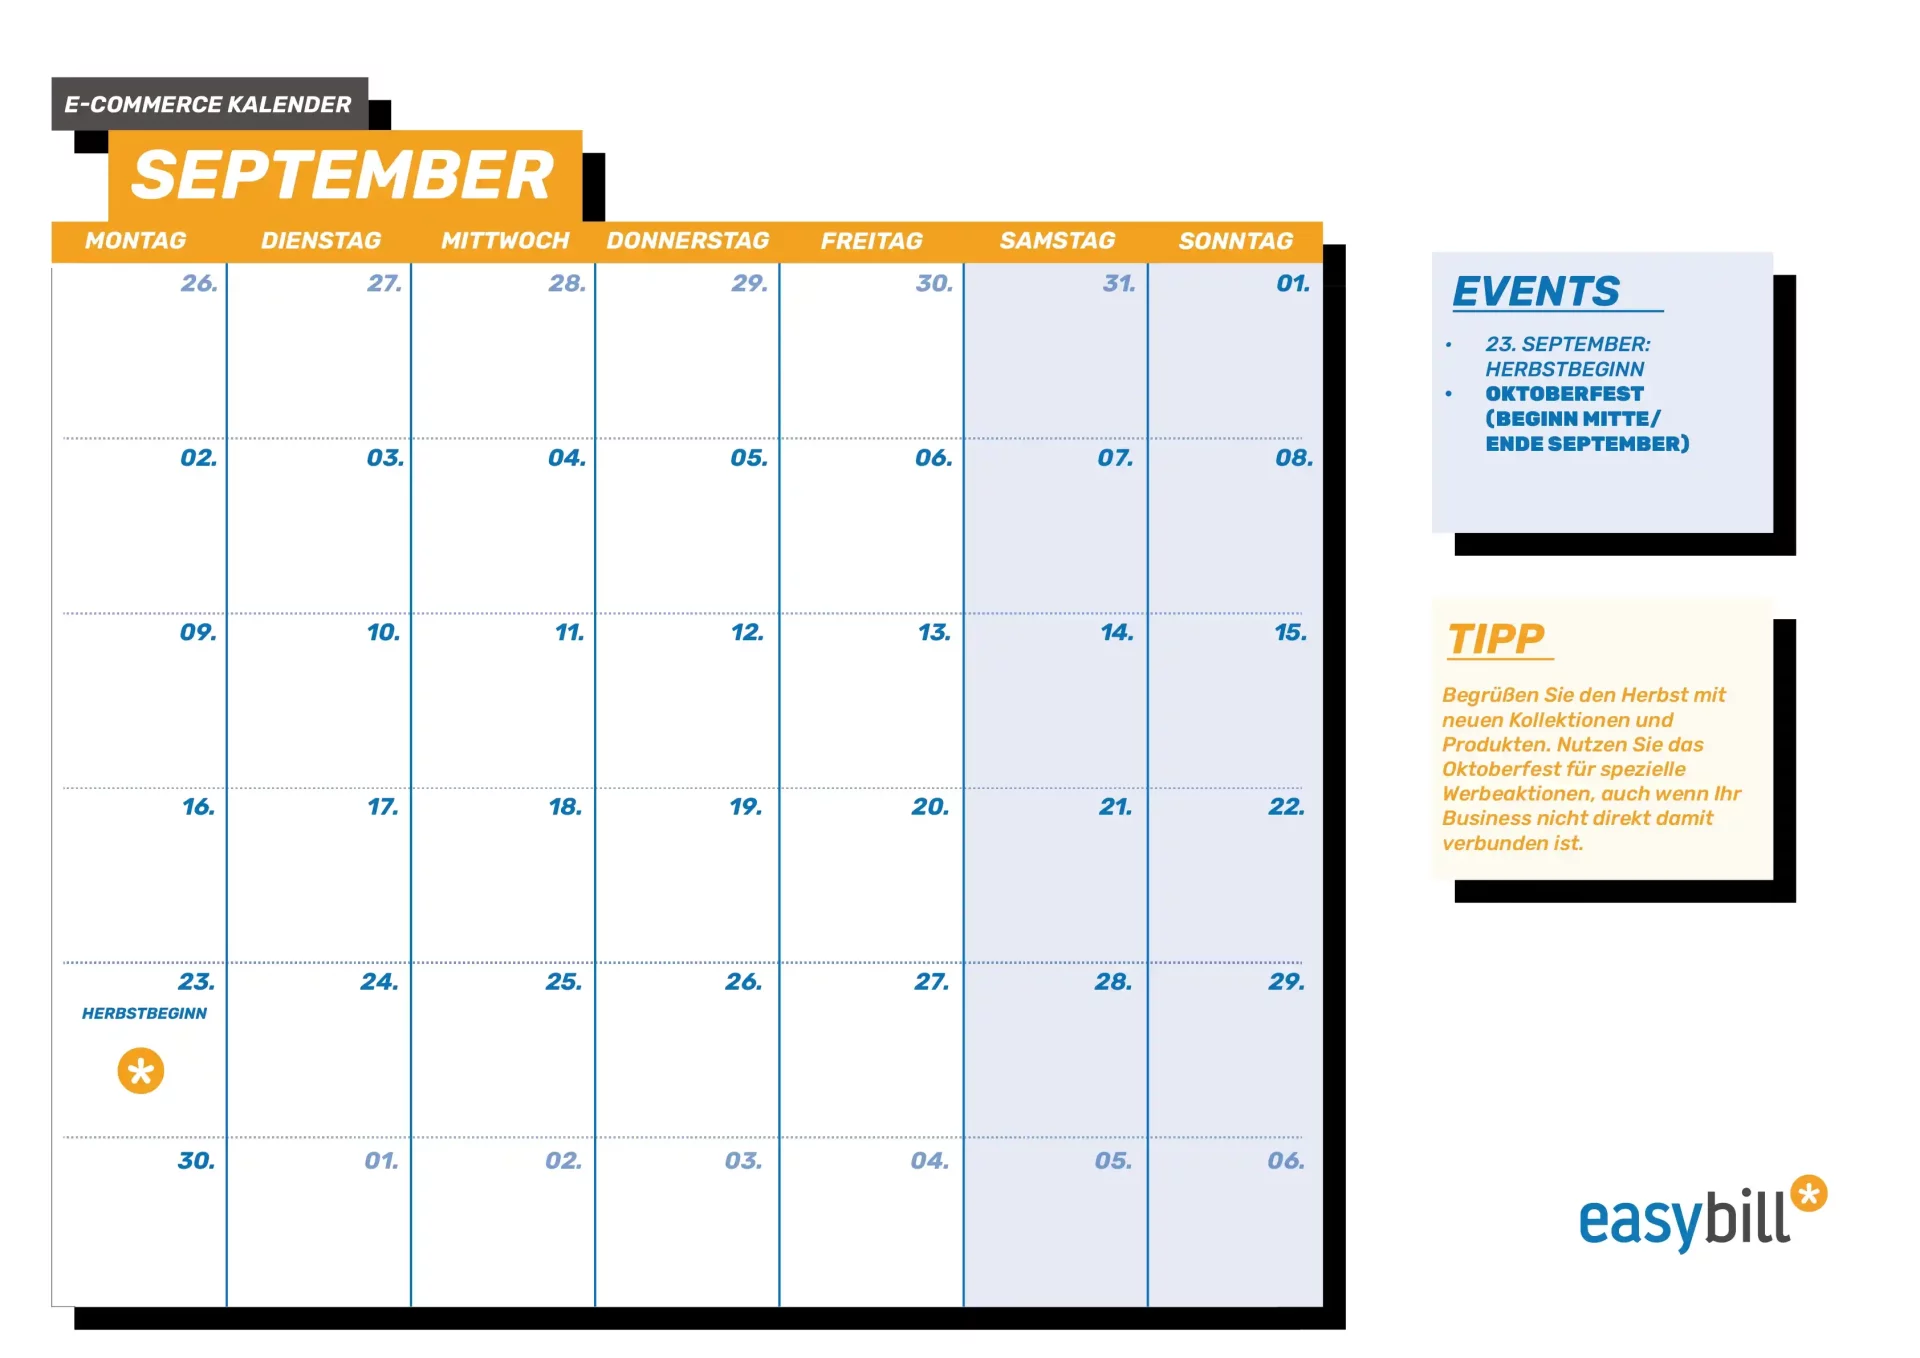 E-Commerce Kalender für September, der den Herbstanfang und die letzte Chance für Sommerartikel betont